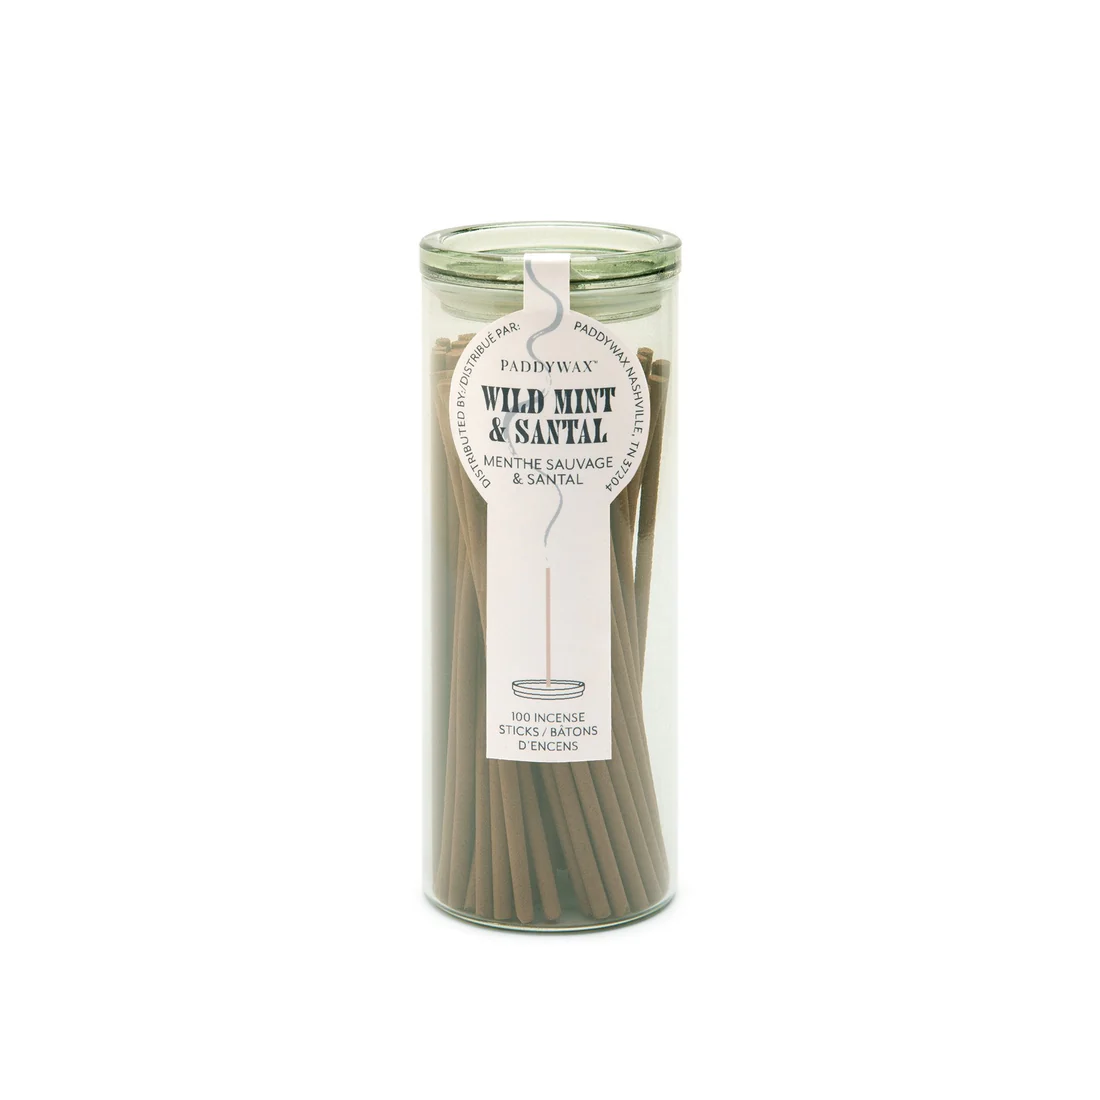 Paddy Wax Incense Sticks & Holder - Wild Mint & Santal